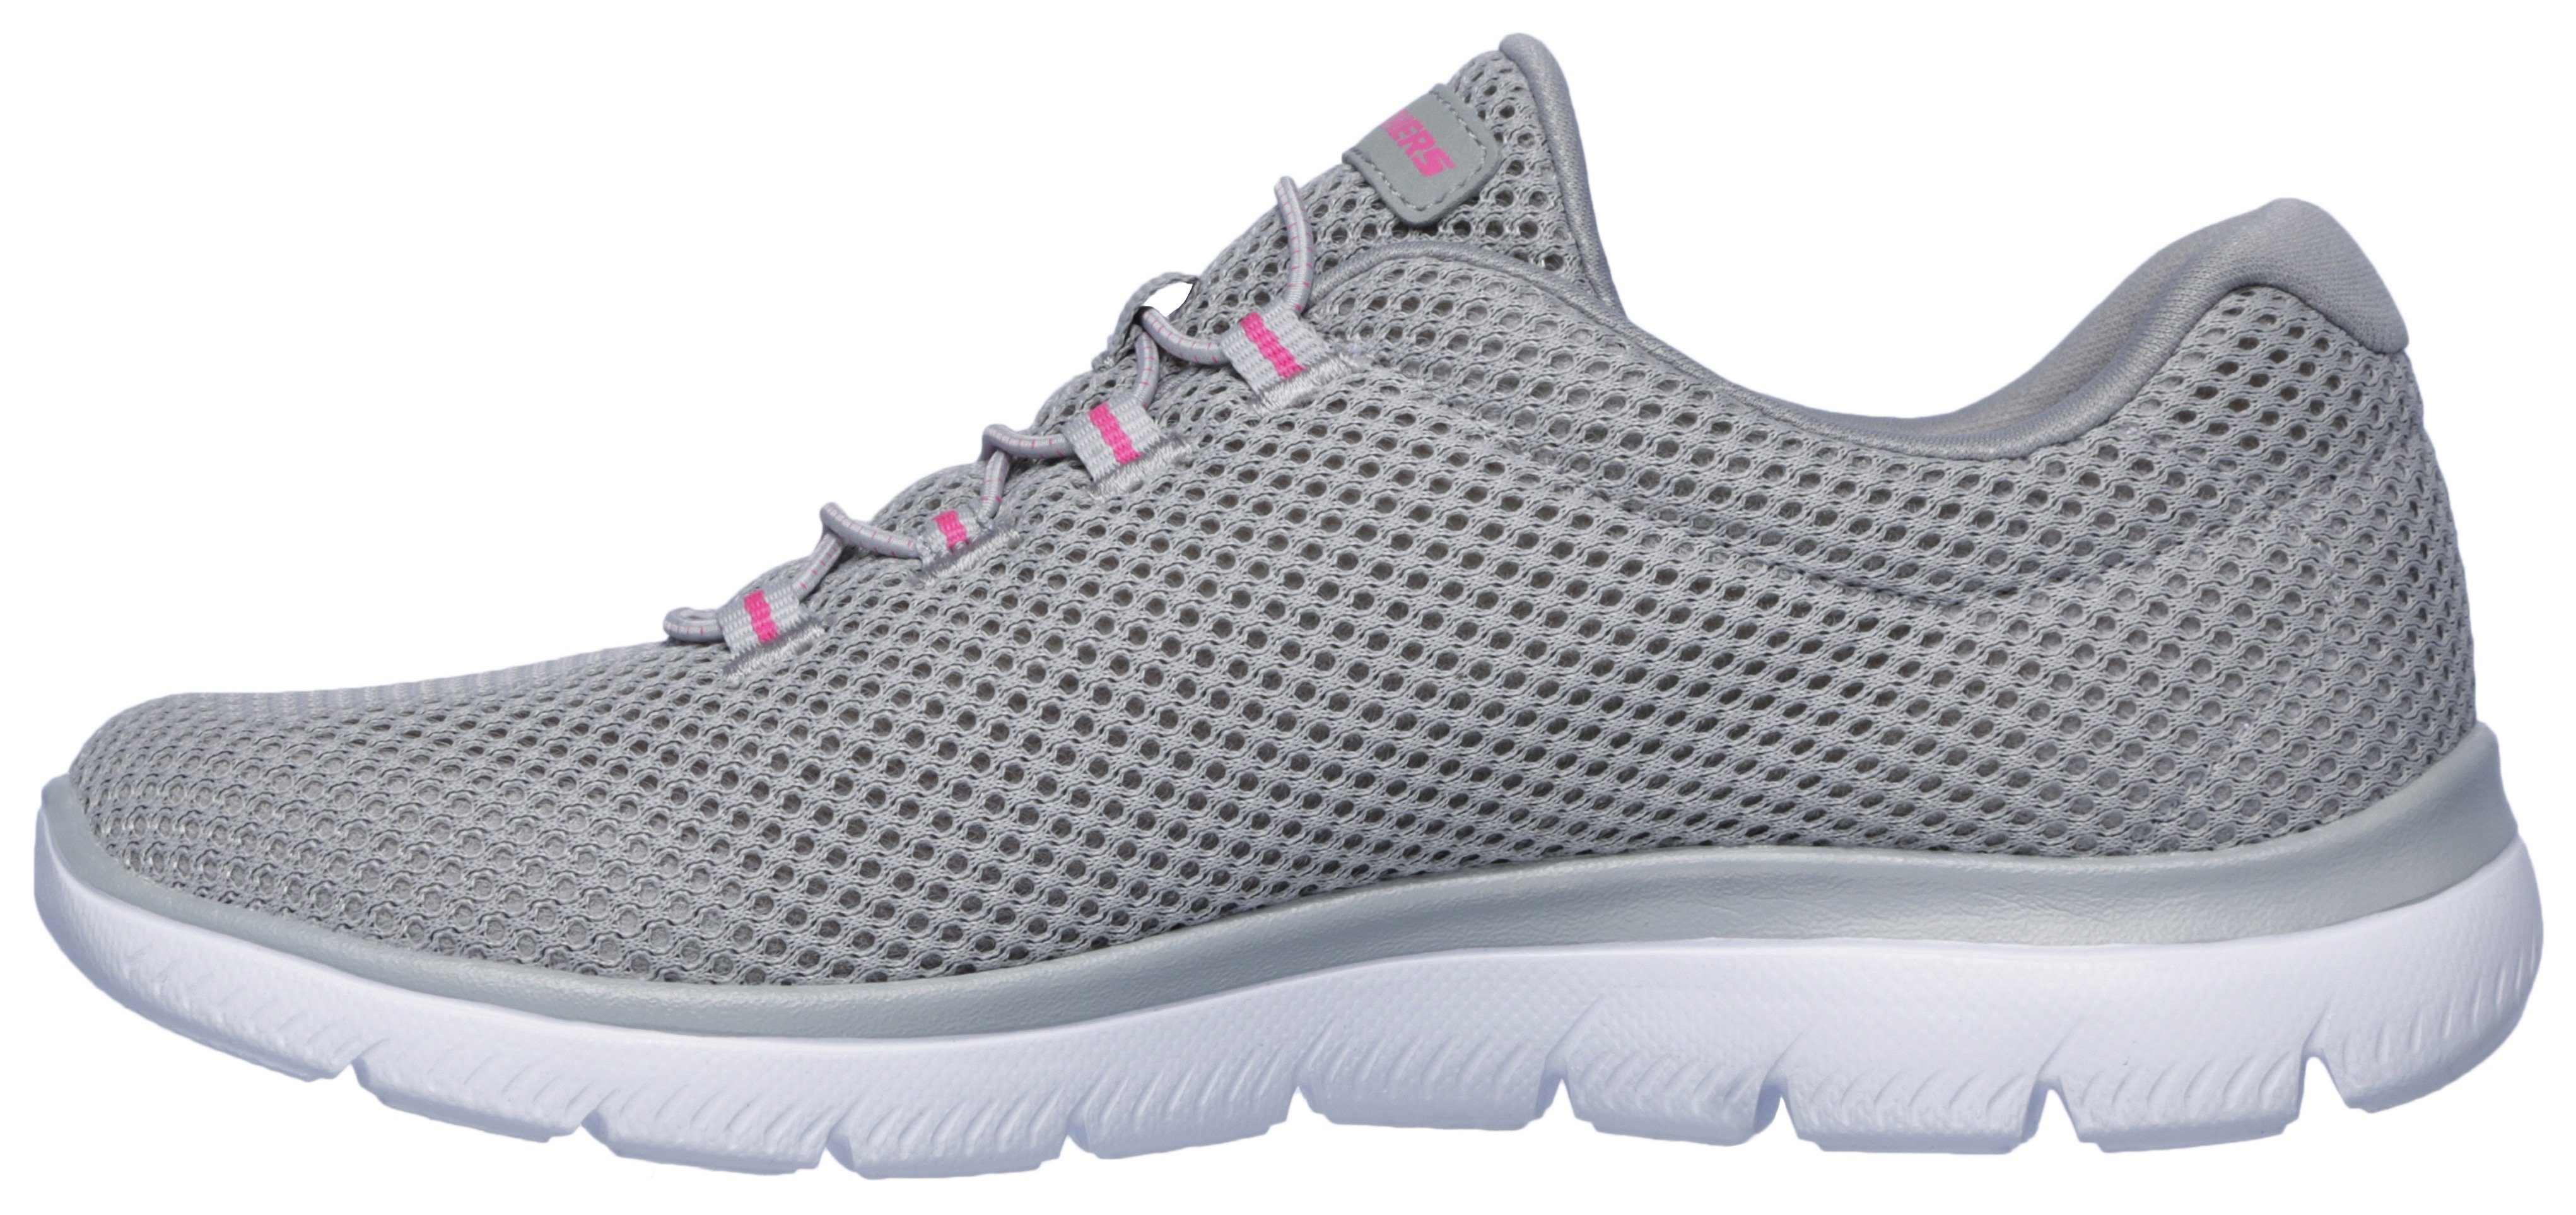 mit Slip-On Innensohle SUMMITS Sneaker Skechers grau-pink komfortabler